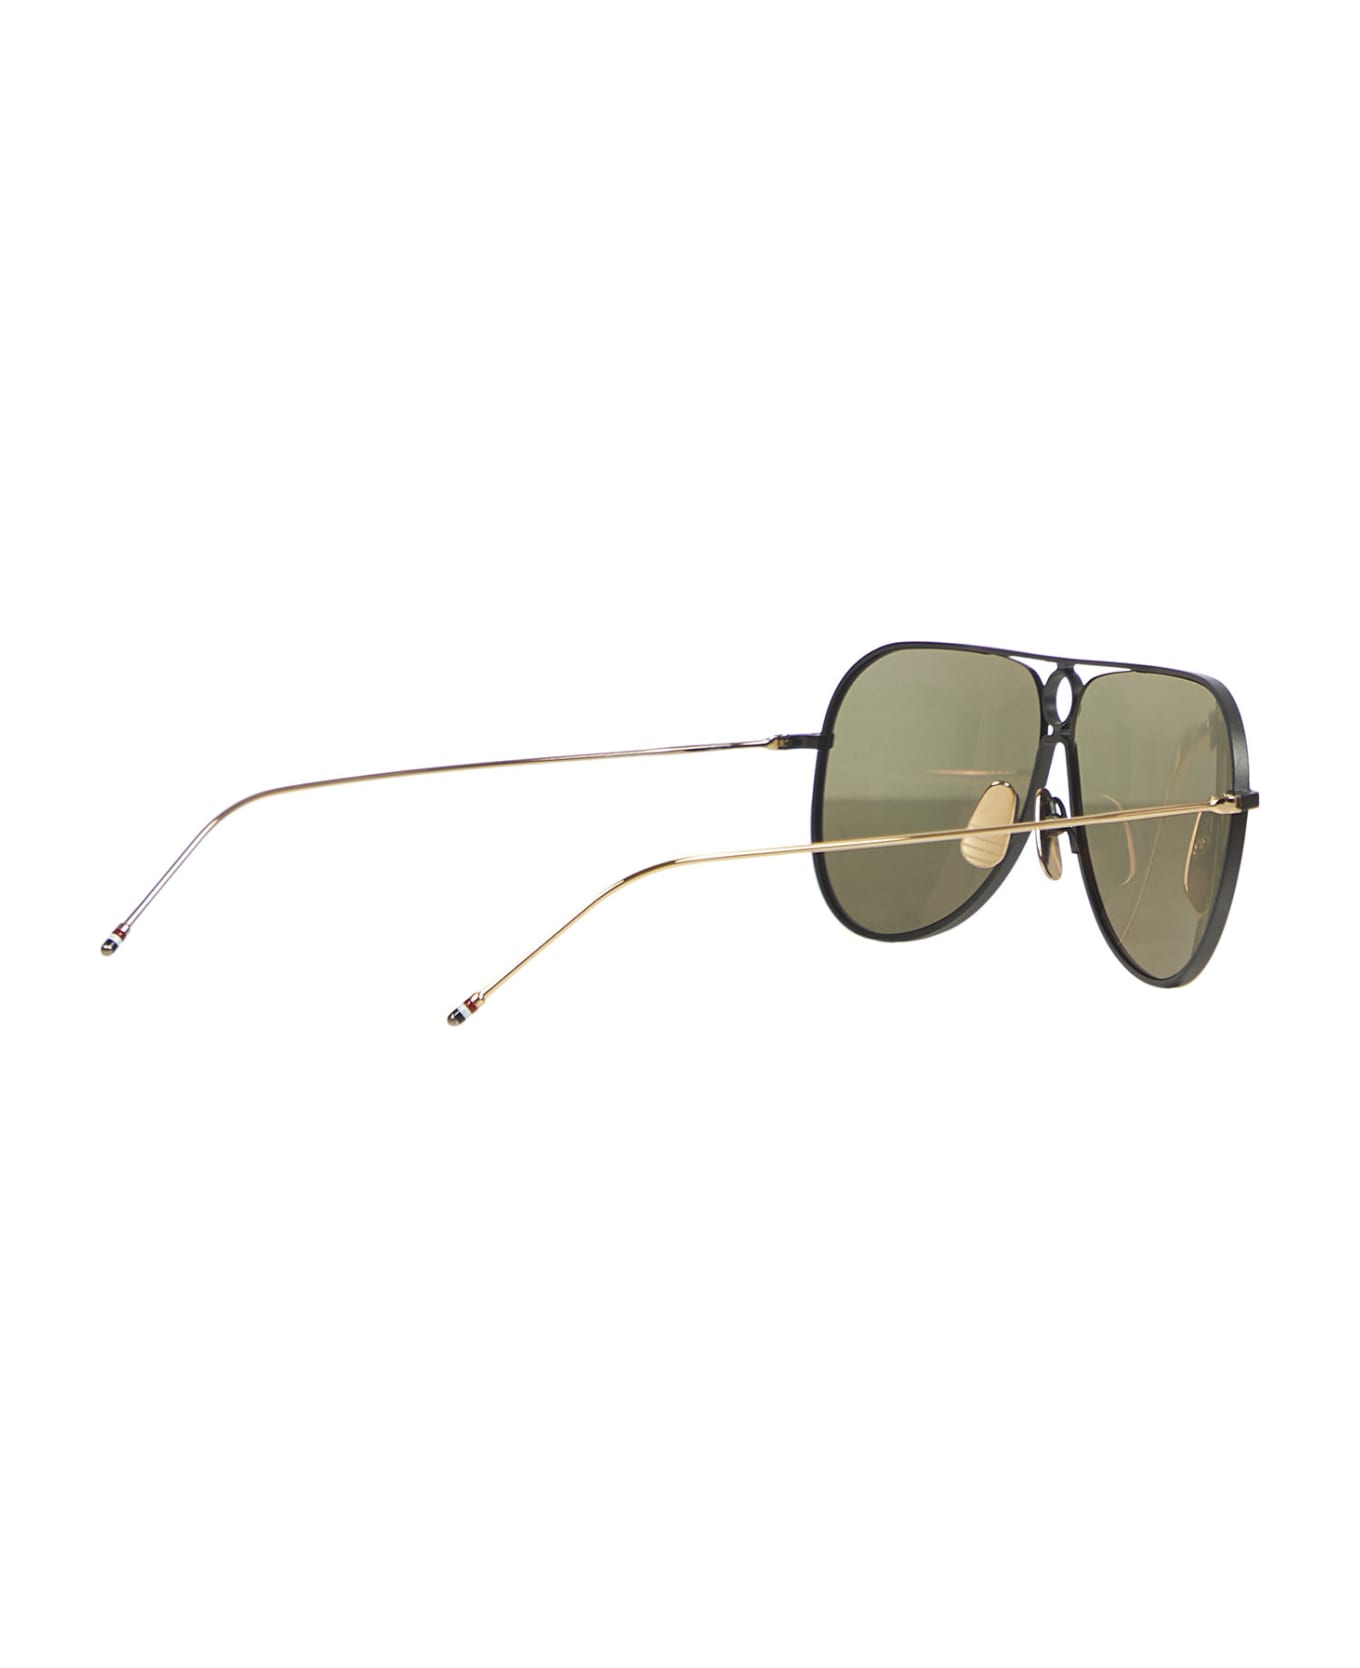 Thom Browne Tbs115 Sunglasses - Black サングラス